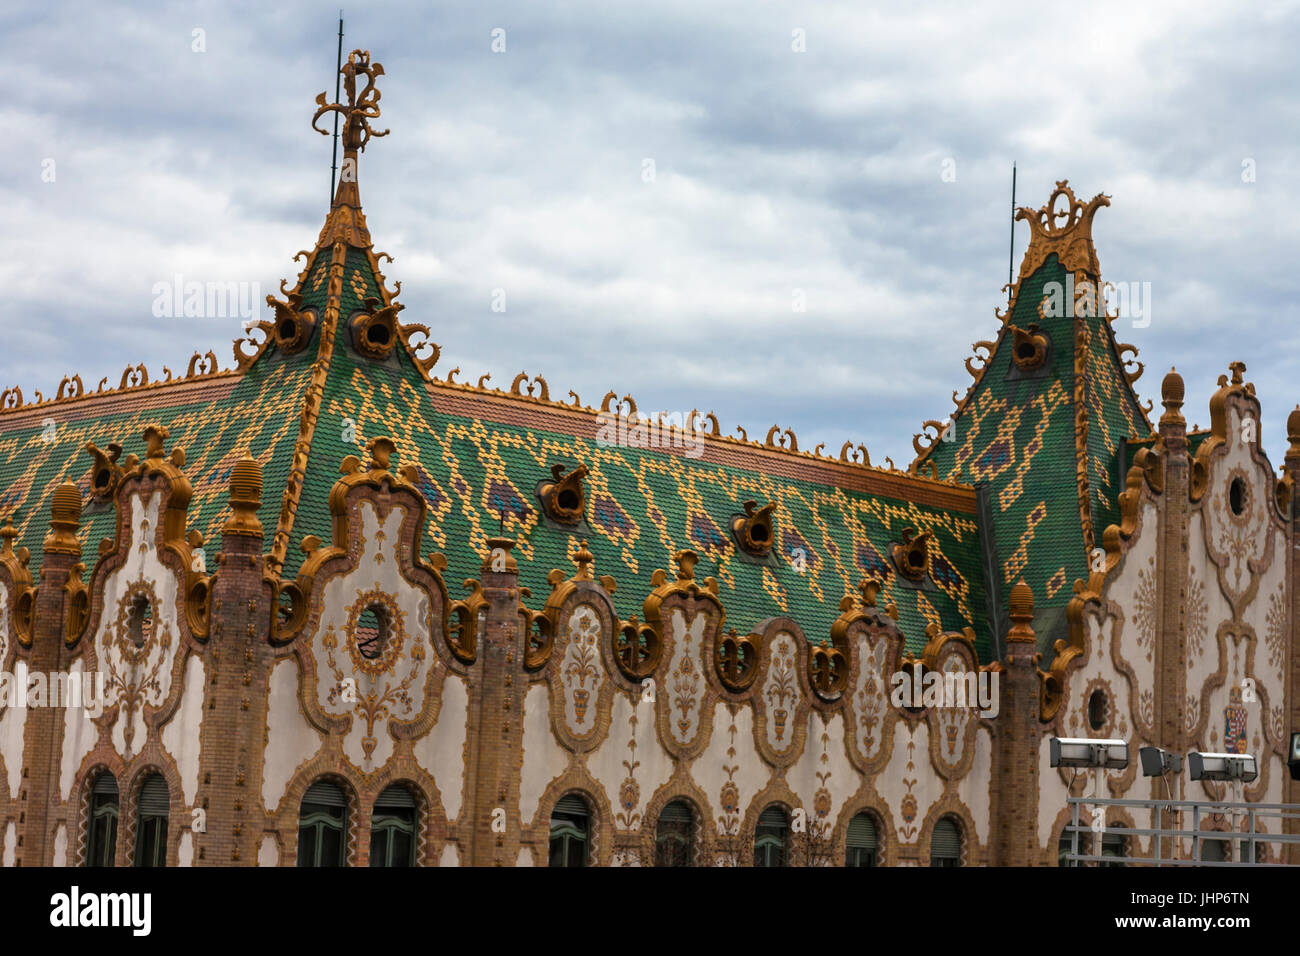 Dettagli architettonici di Stato Ungherese tesoro, Hold utca, Lipótváros, Budapest, Ungheria, visto da Hotel President Foto Stock